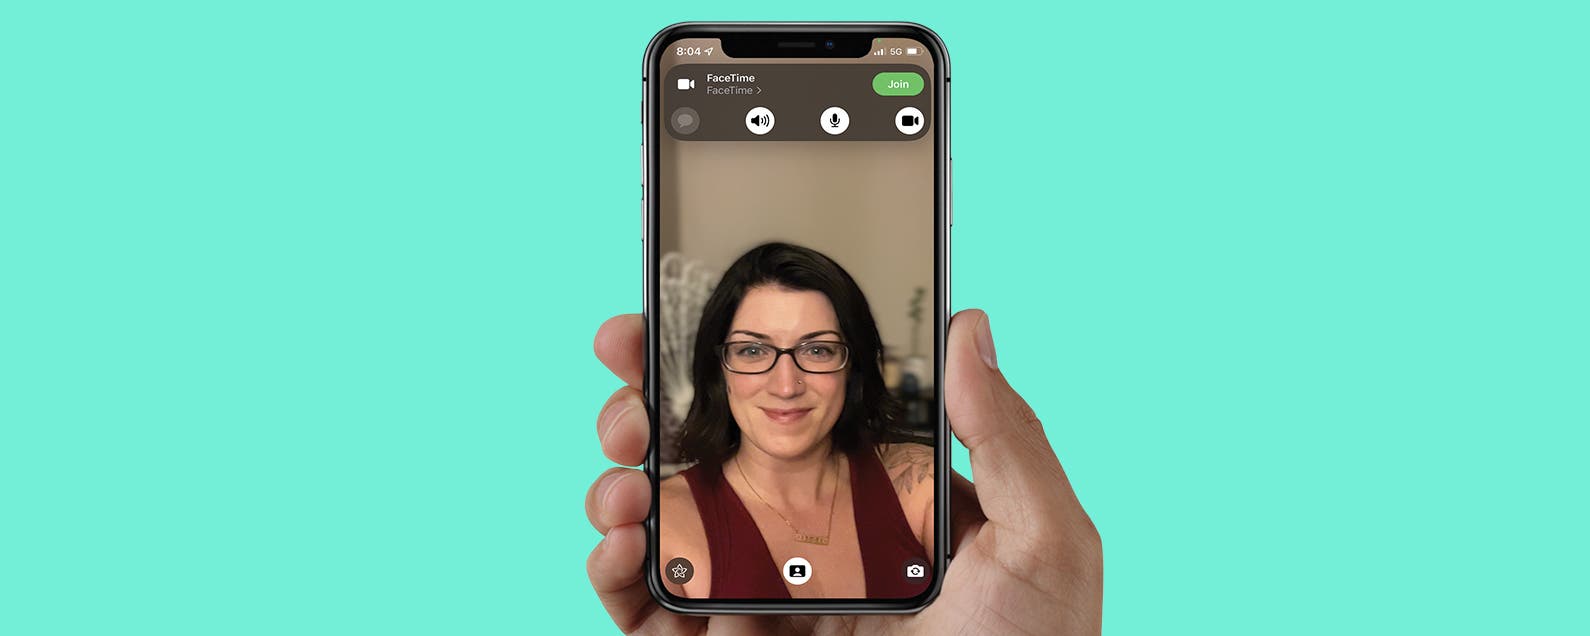 Hãy tìm hiểu cách làm nền mờ trong chế độ Portrait trên FaceTime để tạo ra hình ảnh hoàn hảo cho cuộc gọi video. Với một vài thao tác đơn giản, bạn sẽ có thể tạo được một không gian đẹp mắt và chuyên nghiệp khi trò chuyện với bạn bè hoặc đối tác kinh doanh của mình.